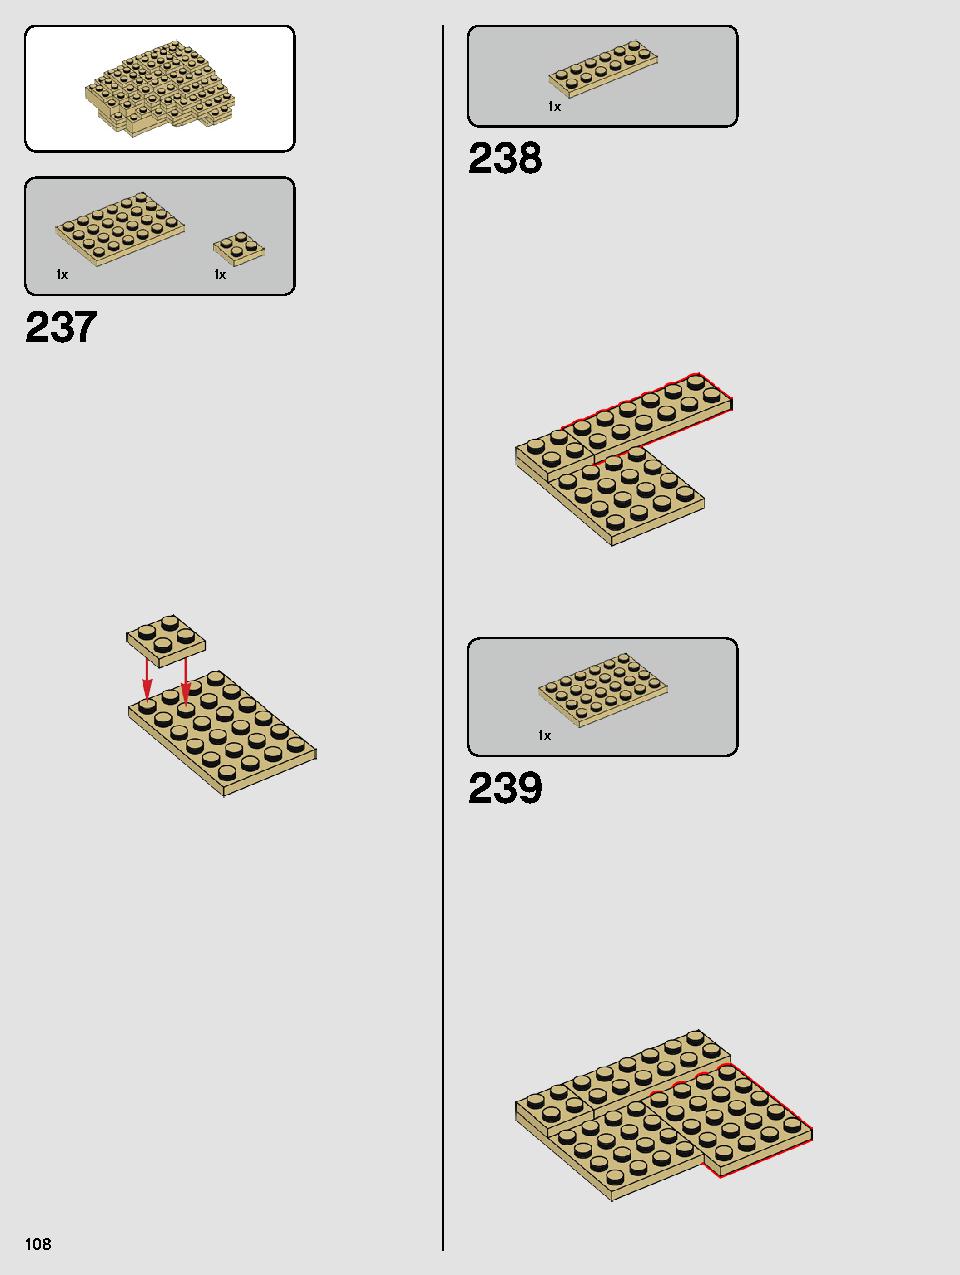 ヨーダ™ 75255 レゴの商品情報 レゴの説明書・組立方法 108 page